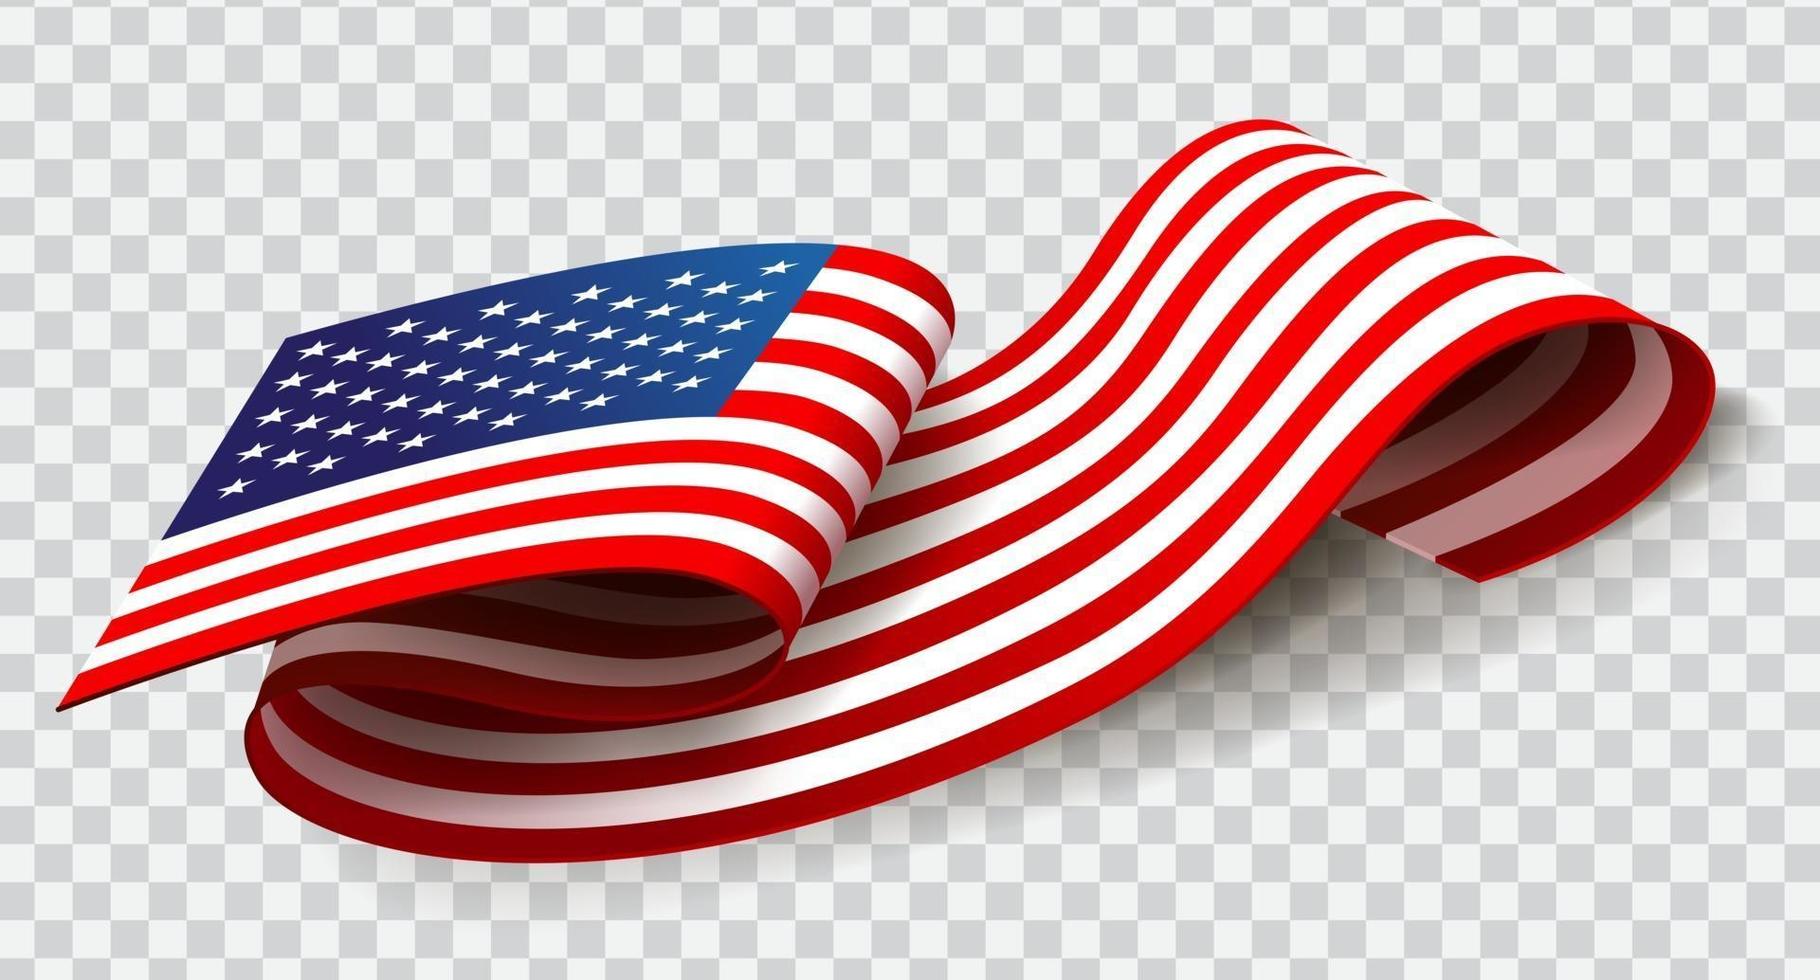 Verenigde Staten van Amerika zwaaien vlag op transparante achtergrond voor 4 juli. vector